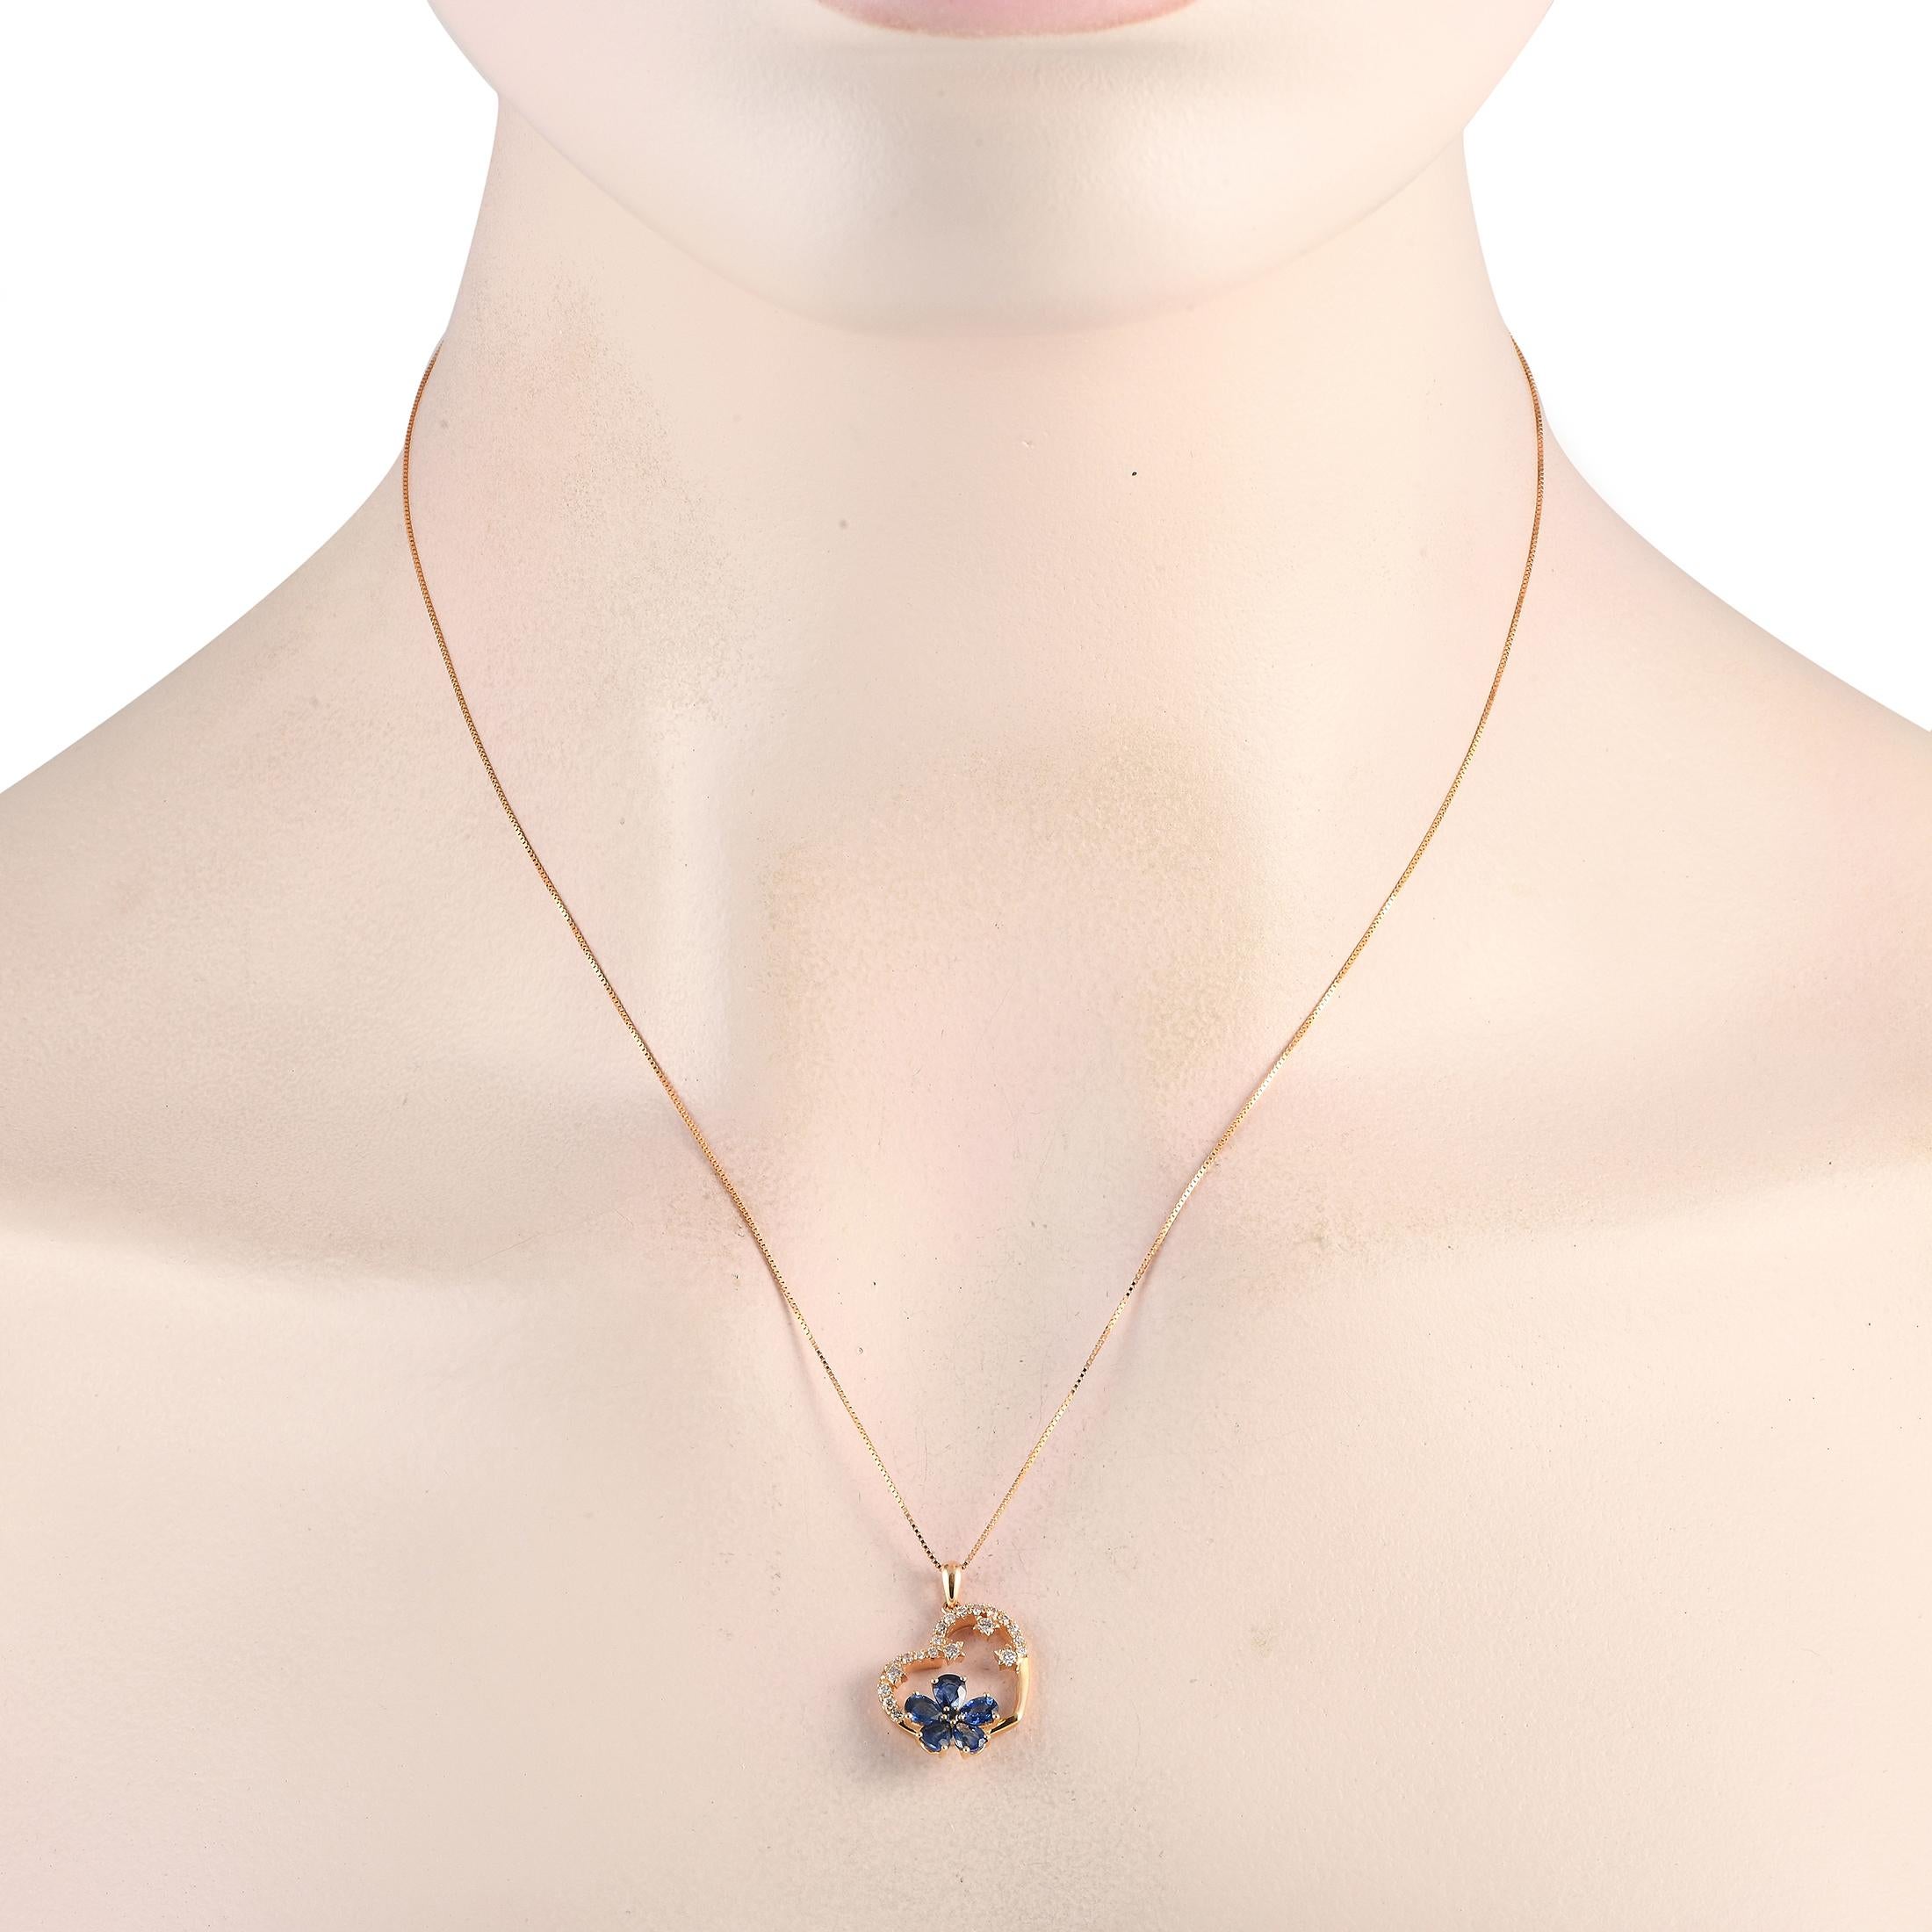 Diese charmante Halskette wird jedes Herz erobern. An einer 18er Kette hängt ein herzförmiger Anhänger aus 14K Rose Gold, der 0,85 lang und 0,65 breit ist. Das Schmuckstück wird durch atemberaubende Saphire in einem floralen Motiv und funkelnde